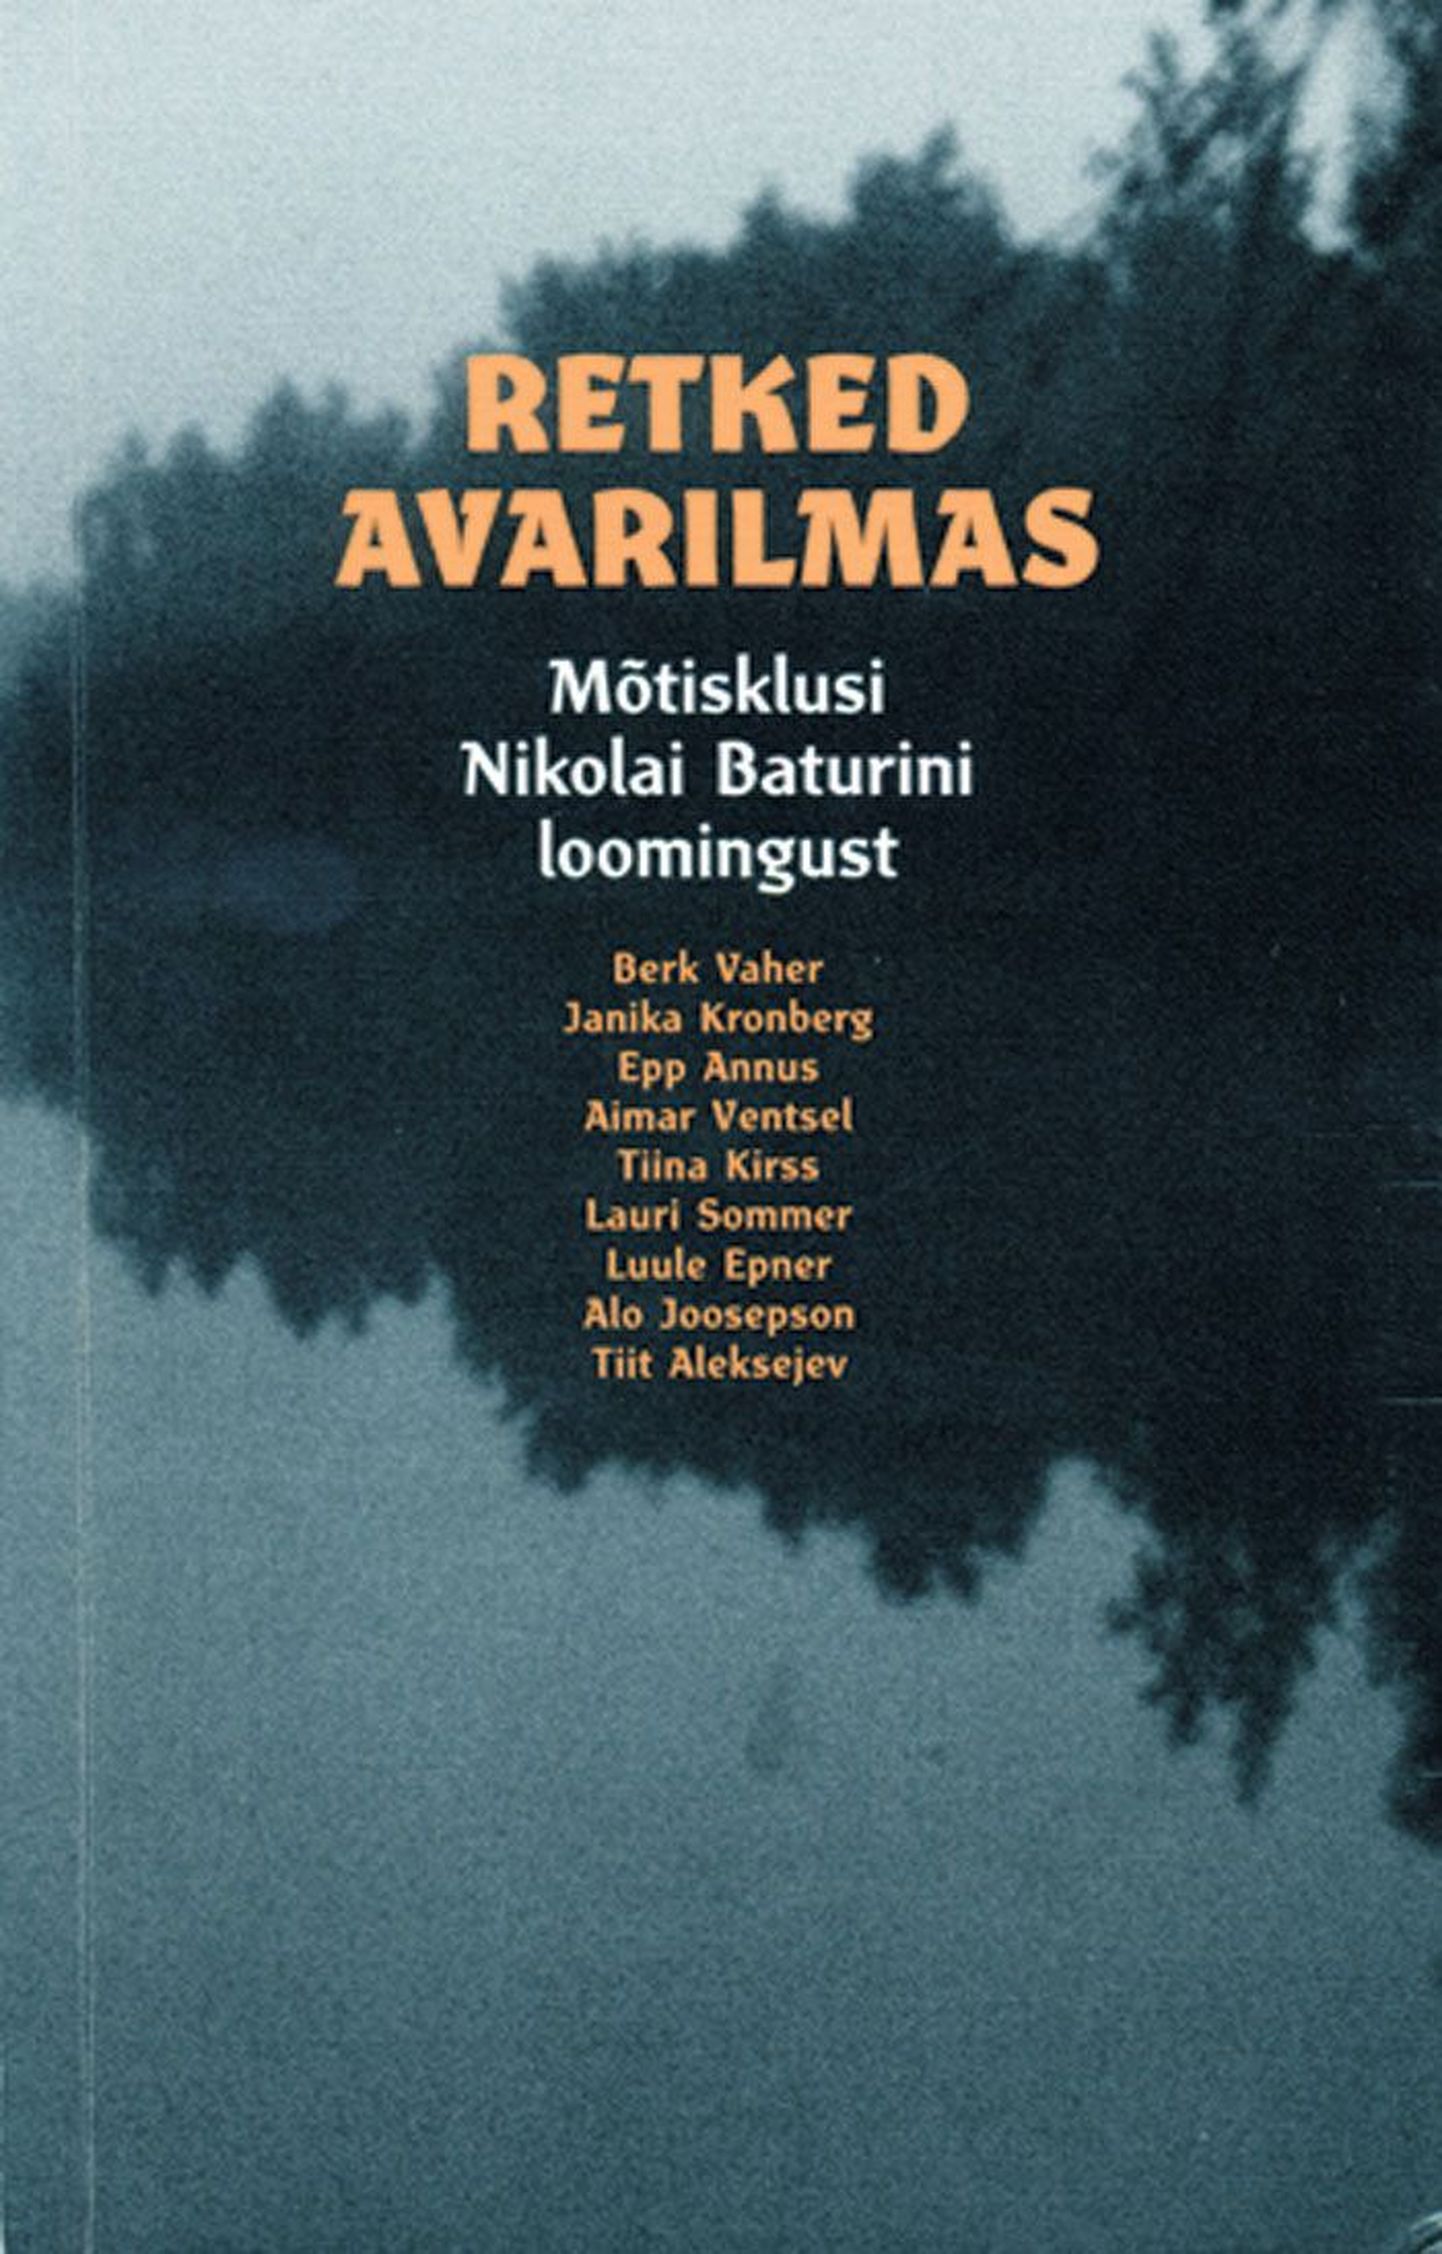 «Retked avarilmas. Mõtisklusi Nikolai Baturini loomingust», Tartu 2009, 136 lk.